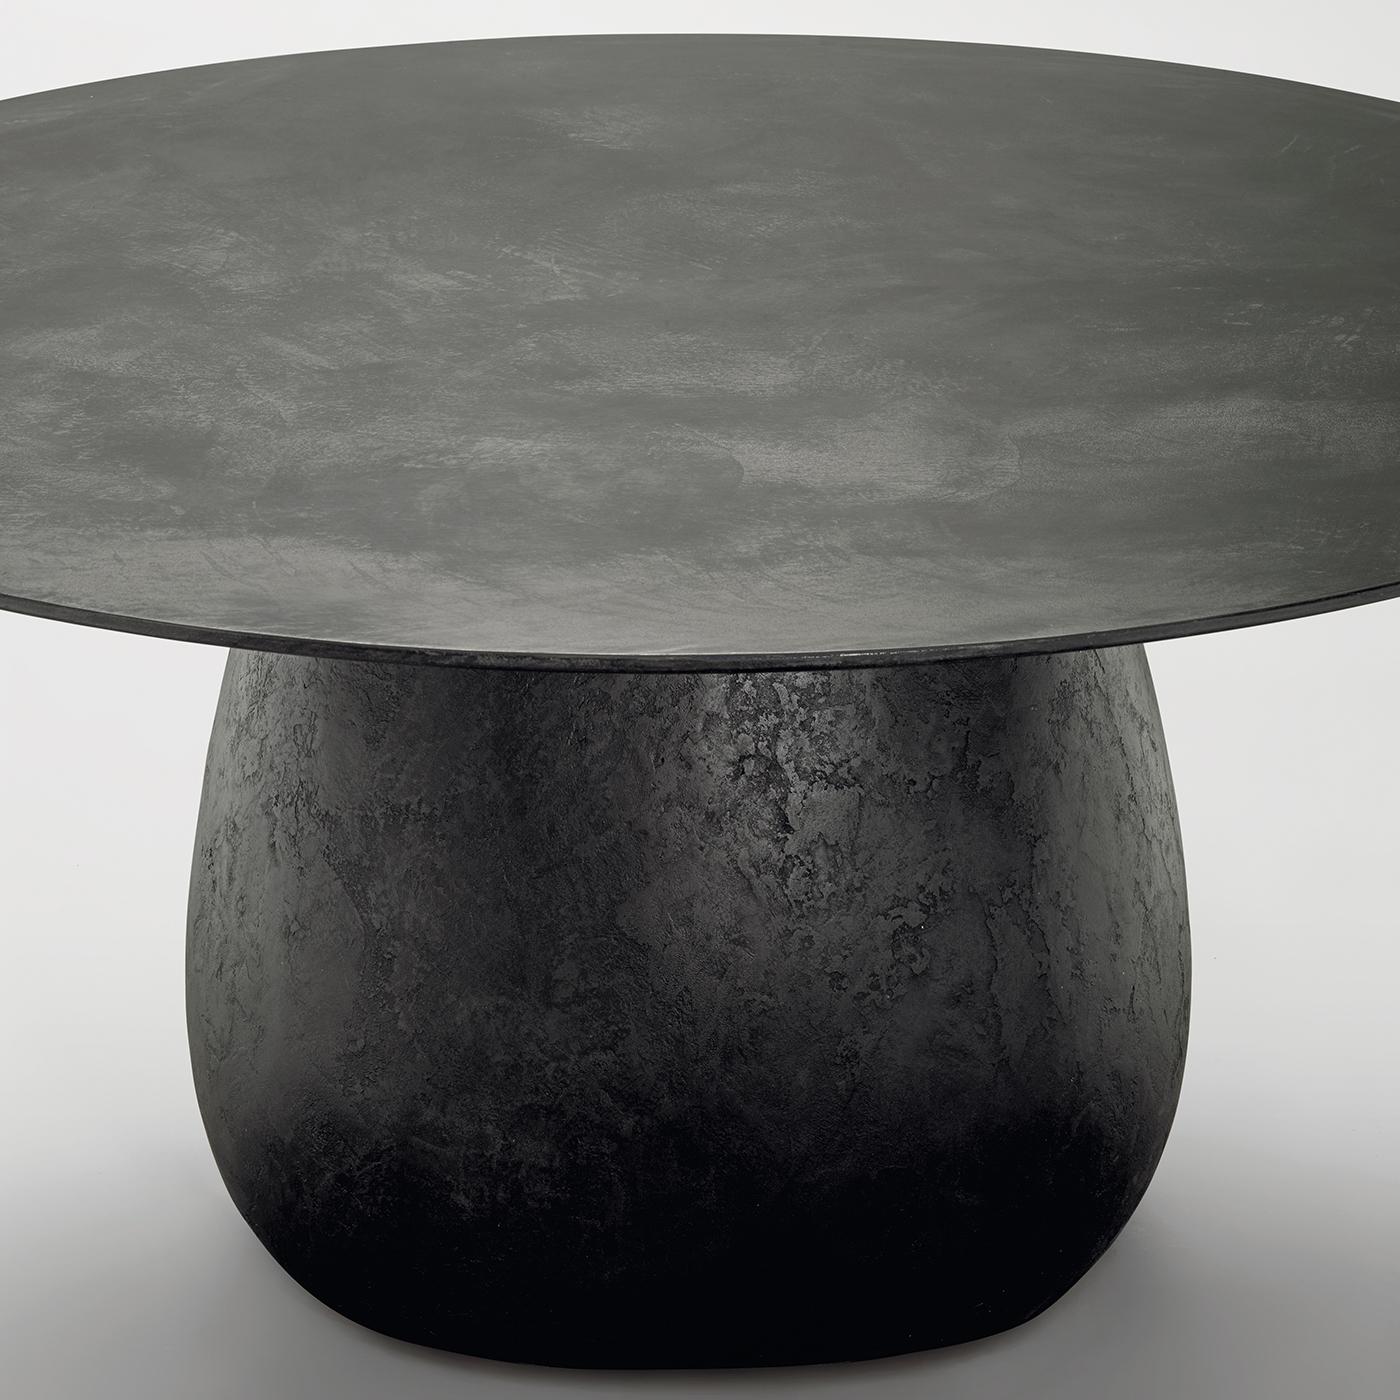 Audacieuse et sophistiquée, cette table de salle à manger présente une silhouette sculpturale composée de deux éléments : une base robuste composée d'un pied en acier entouré de polyuréthane rigide, et un plateau circulaire en purenit, un nouveau